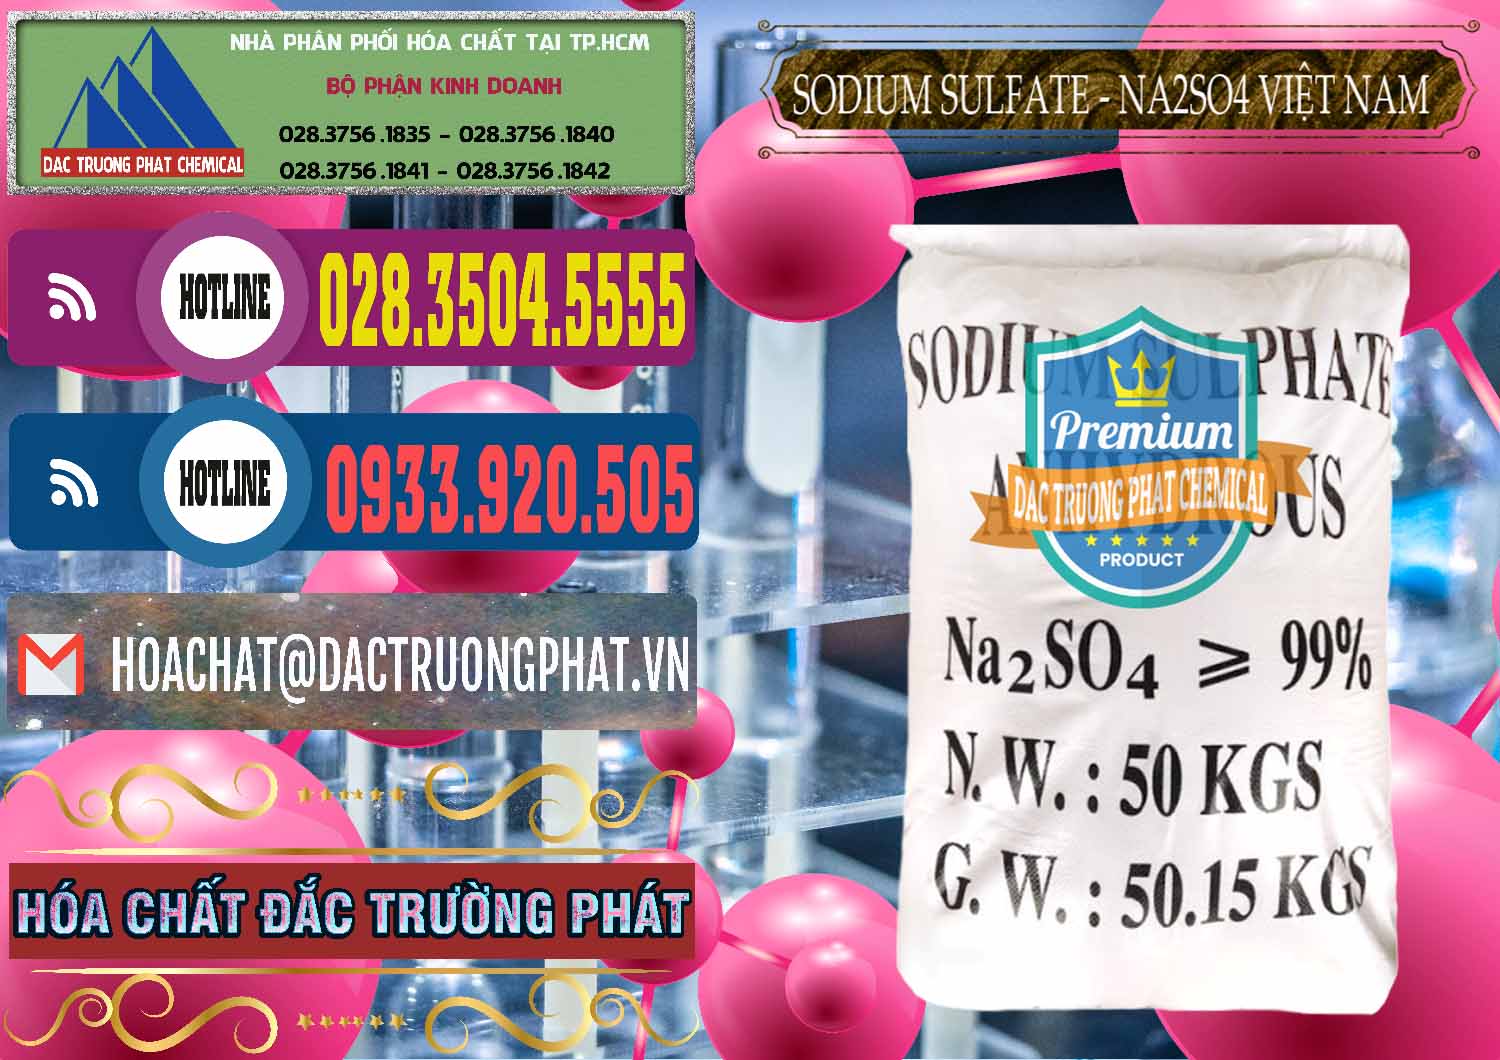 Nơi cung ứng và bán Sodium Sulphate - Muối Sunfat Na2SO4 Việt Nam - 0355 - Công ty chuyên kinh doanh và phân phối hóa chất tại TP.HCM - muabanhoachat.com.vn